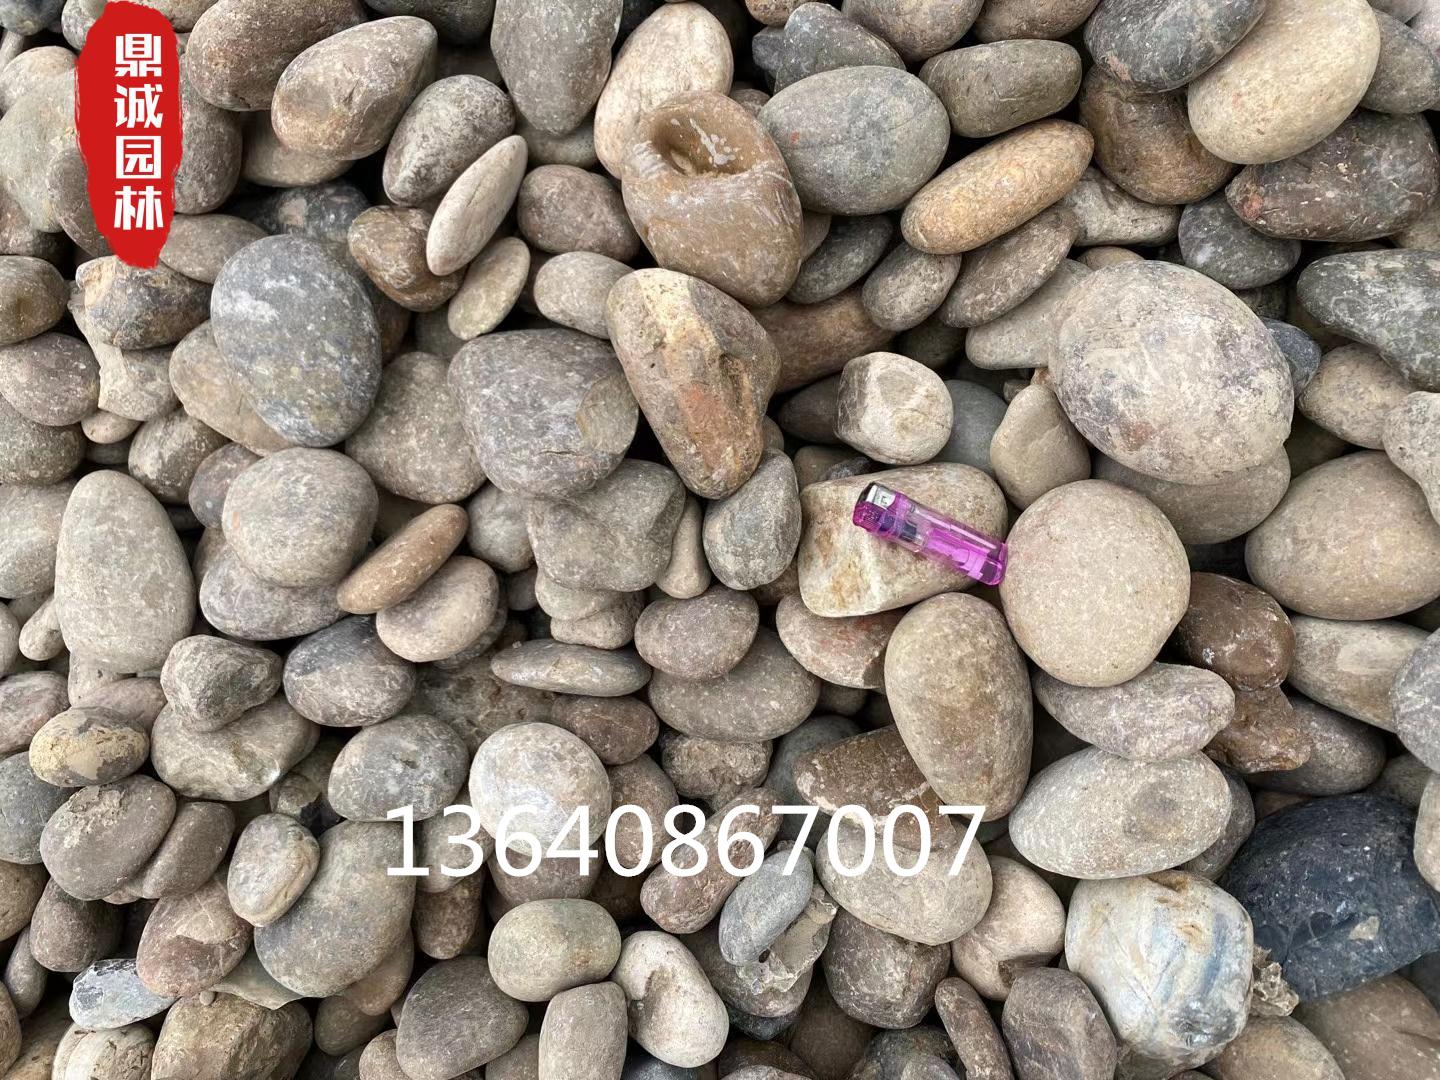 鹅卵石置石点缀石 (2) - 客户案例 - 灵璧县彭达园林石业